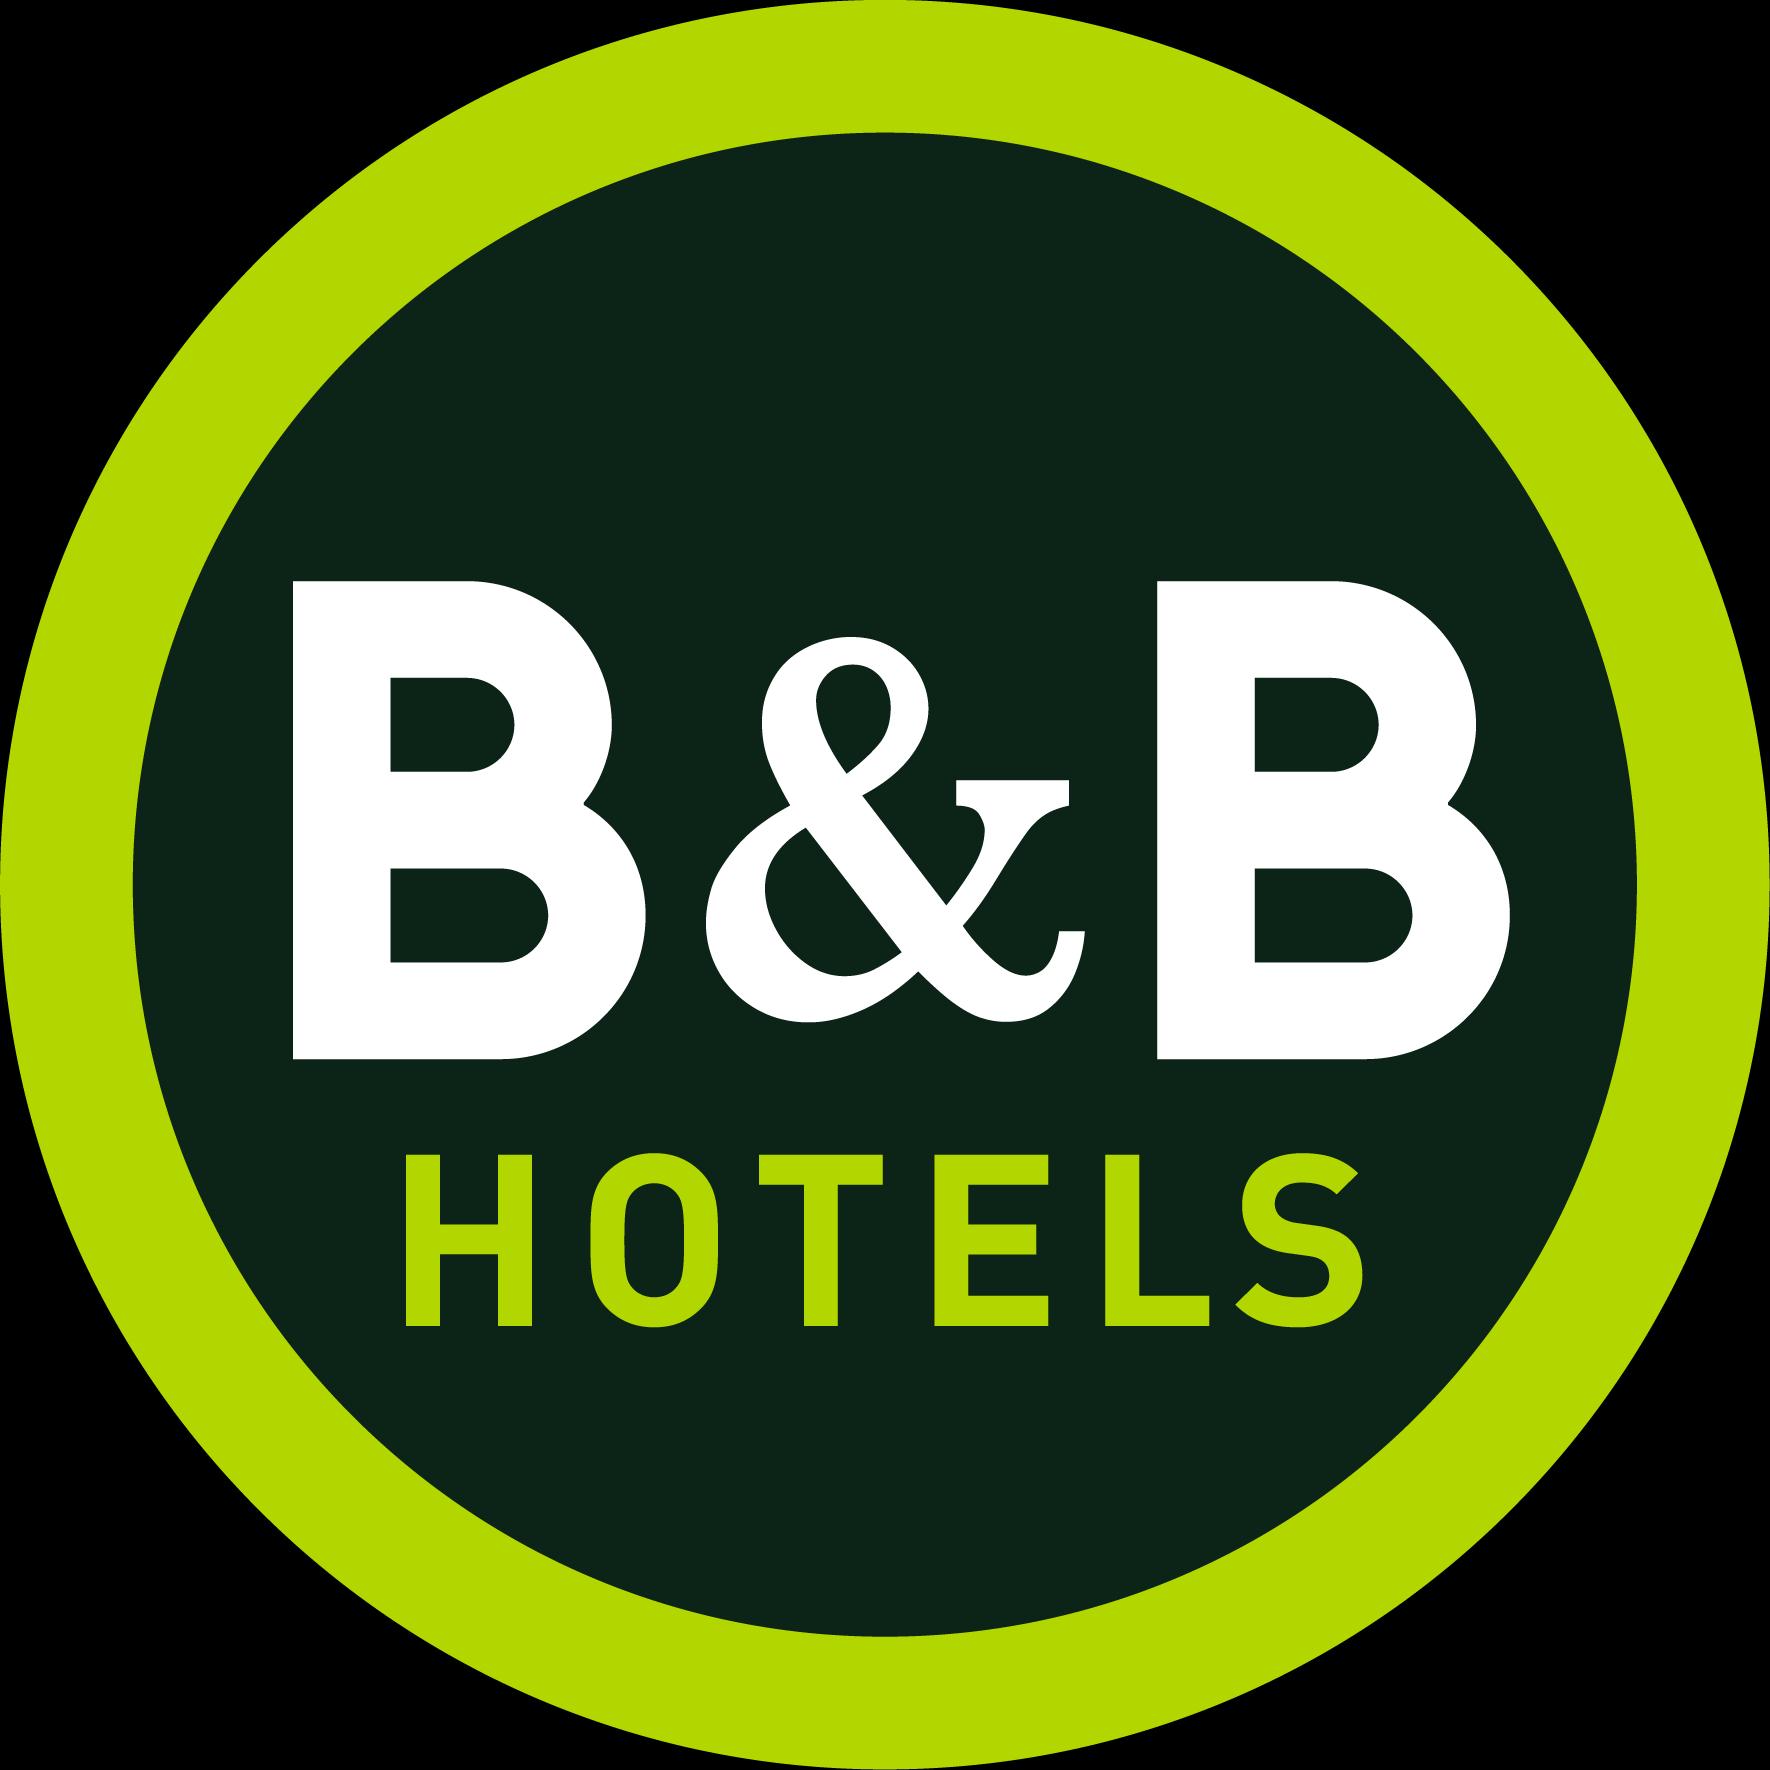 B&b Hotel Brive-la-gaillarde Ussac